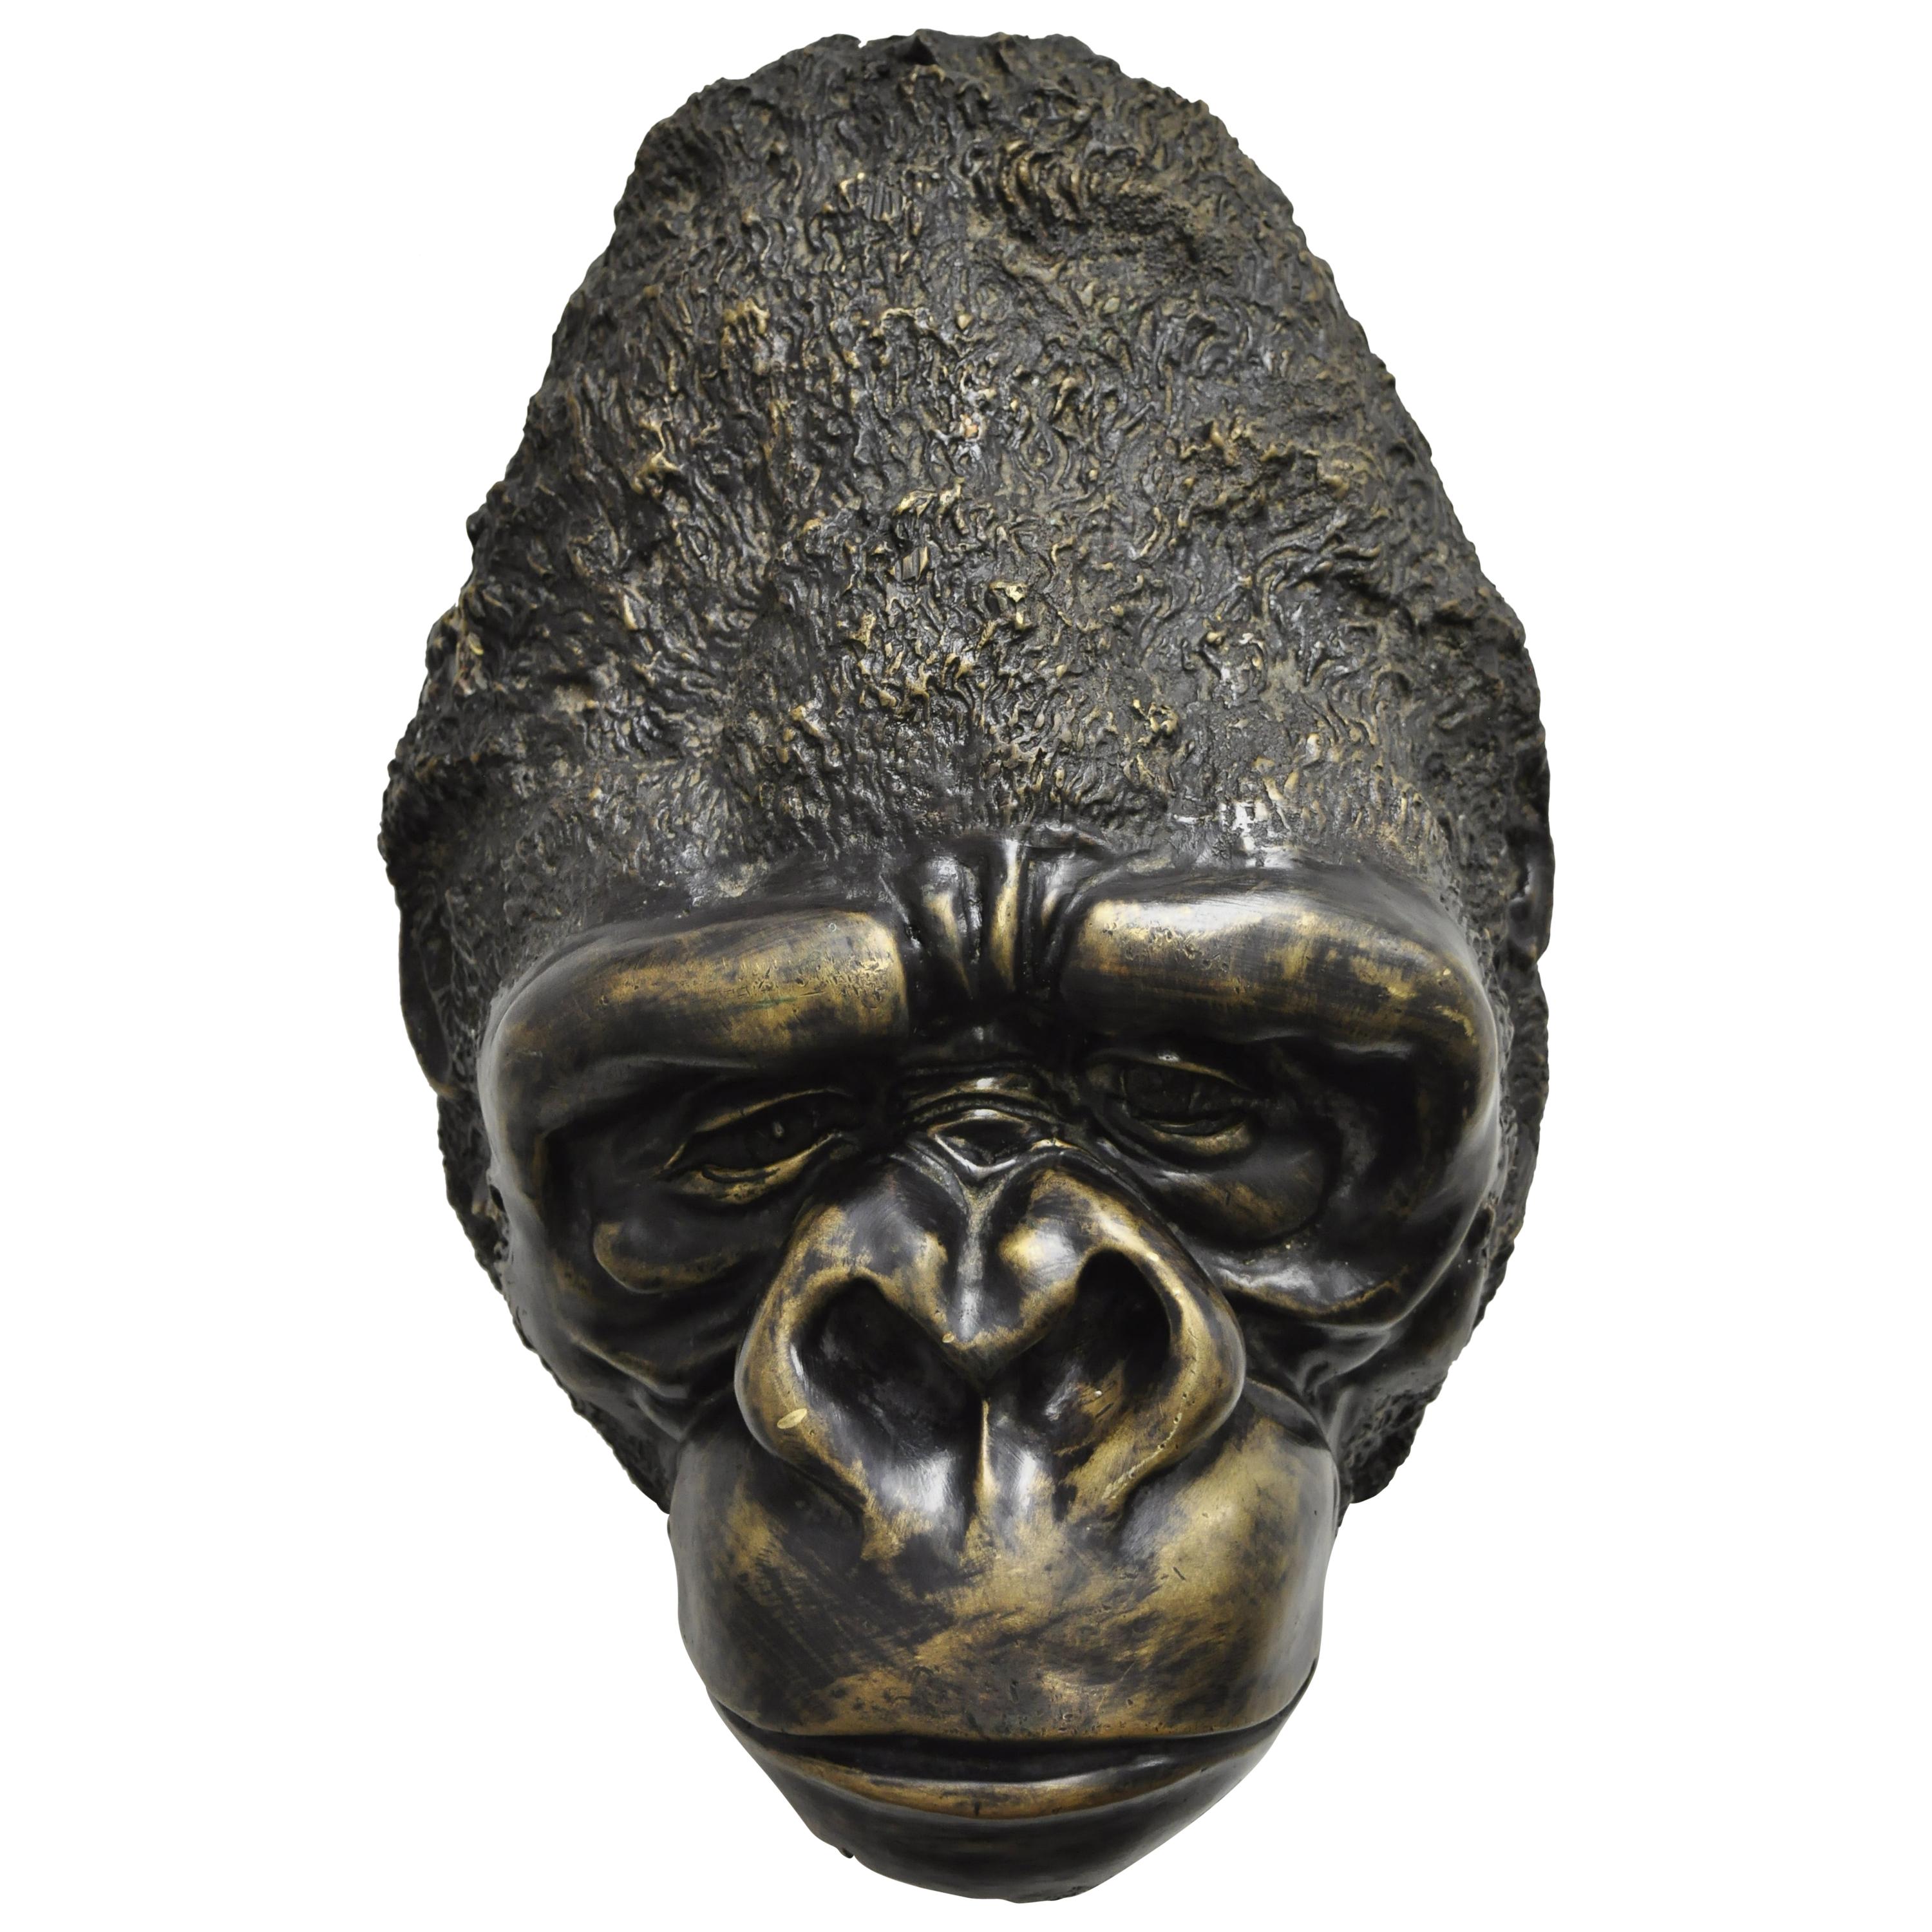 Grande sculpture murale en bronze moulé représentant une tête de Gorilla, collectionneur de animaux sauvages « A »